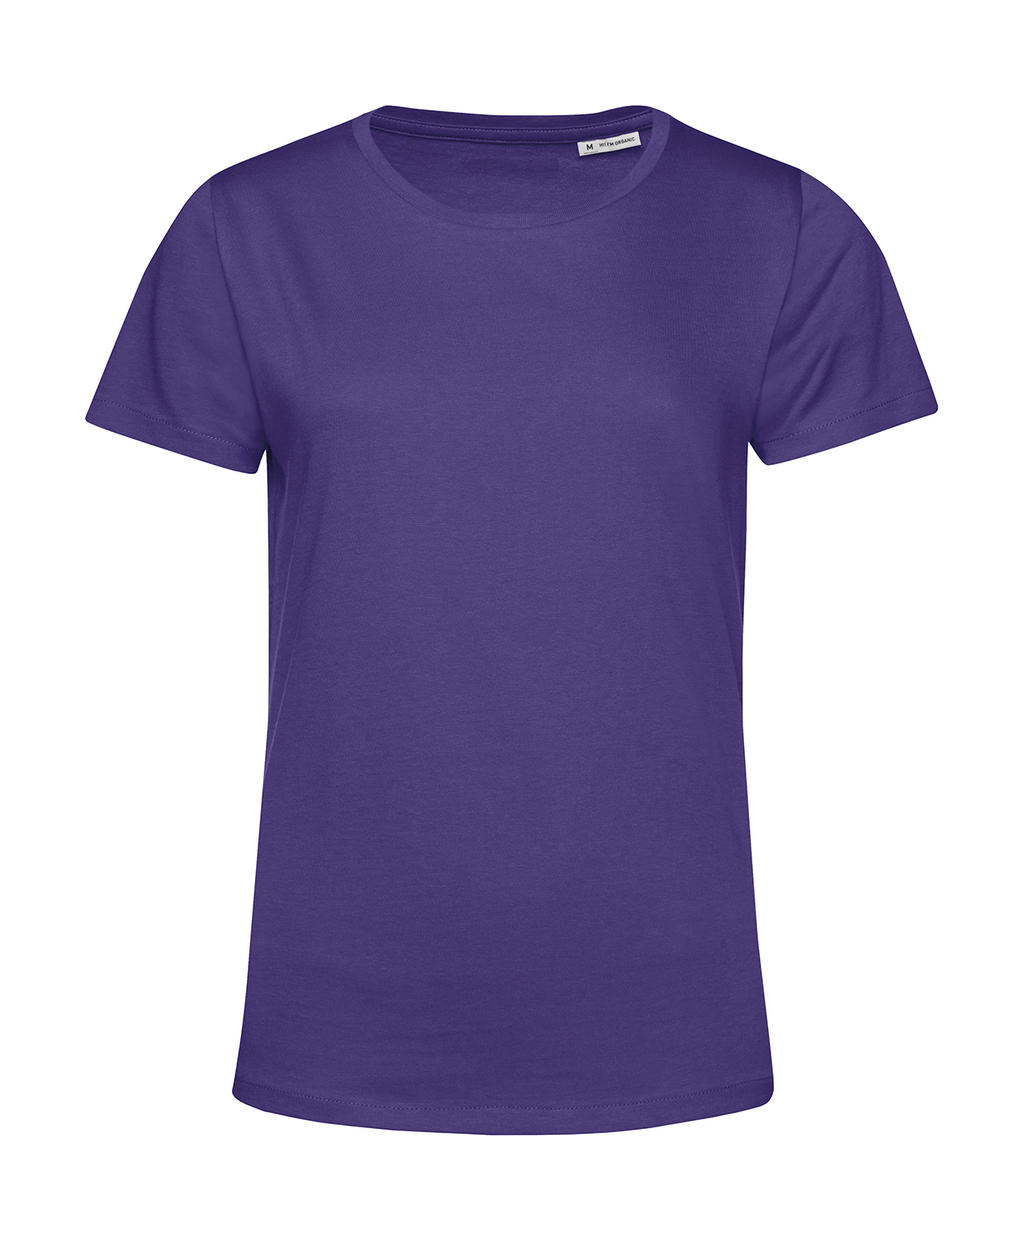 Dámske tričko #organic inspire E150 /women - radiant purple